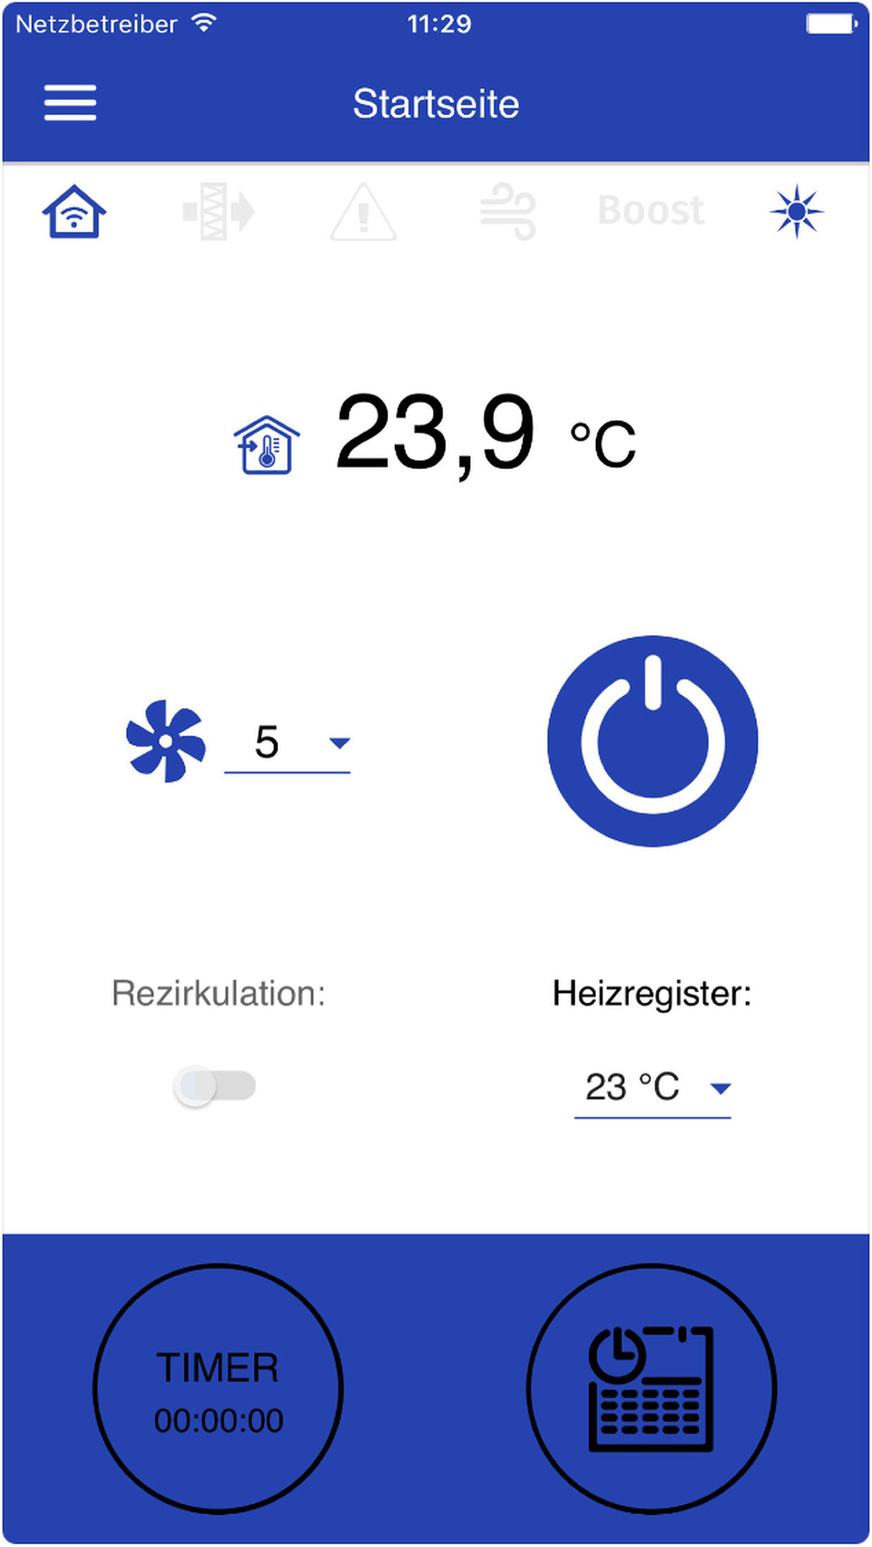 Die Startseite der App-Steuerung zeigt unter anderem die Zimmertemperatur, die aktuell eingestellte Lüftungsstufe sowie bei einer Ausführung mit Heizregister die eingestellte Temperatur an.